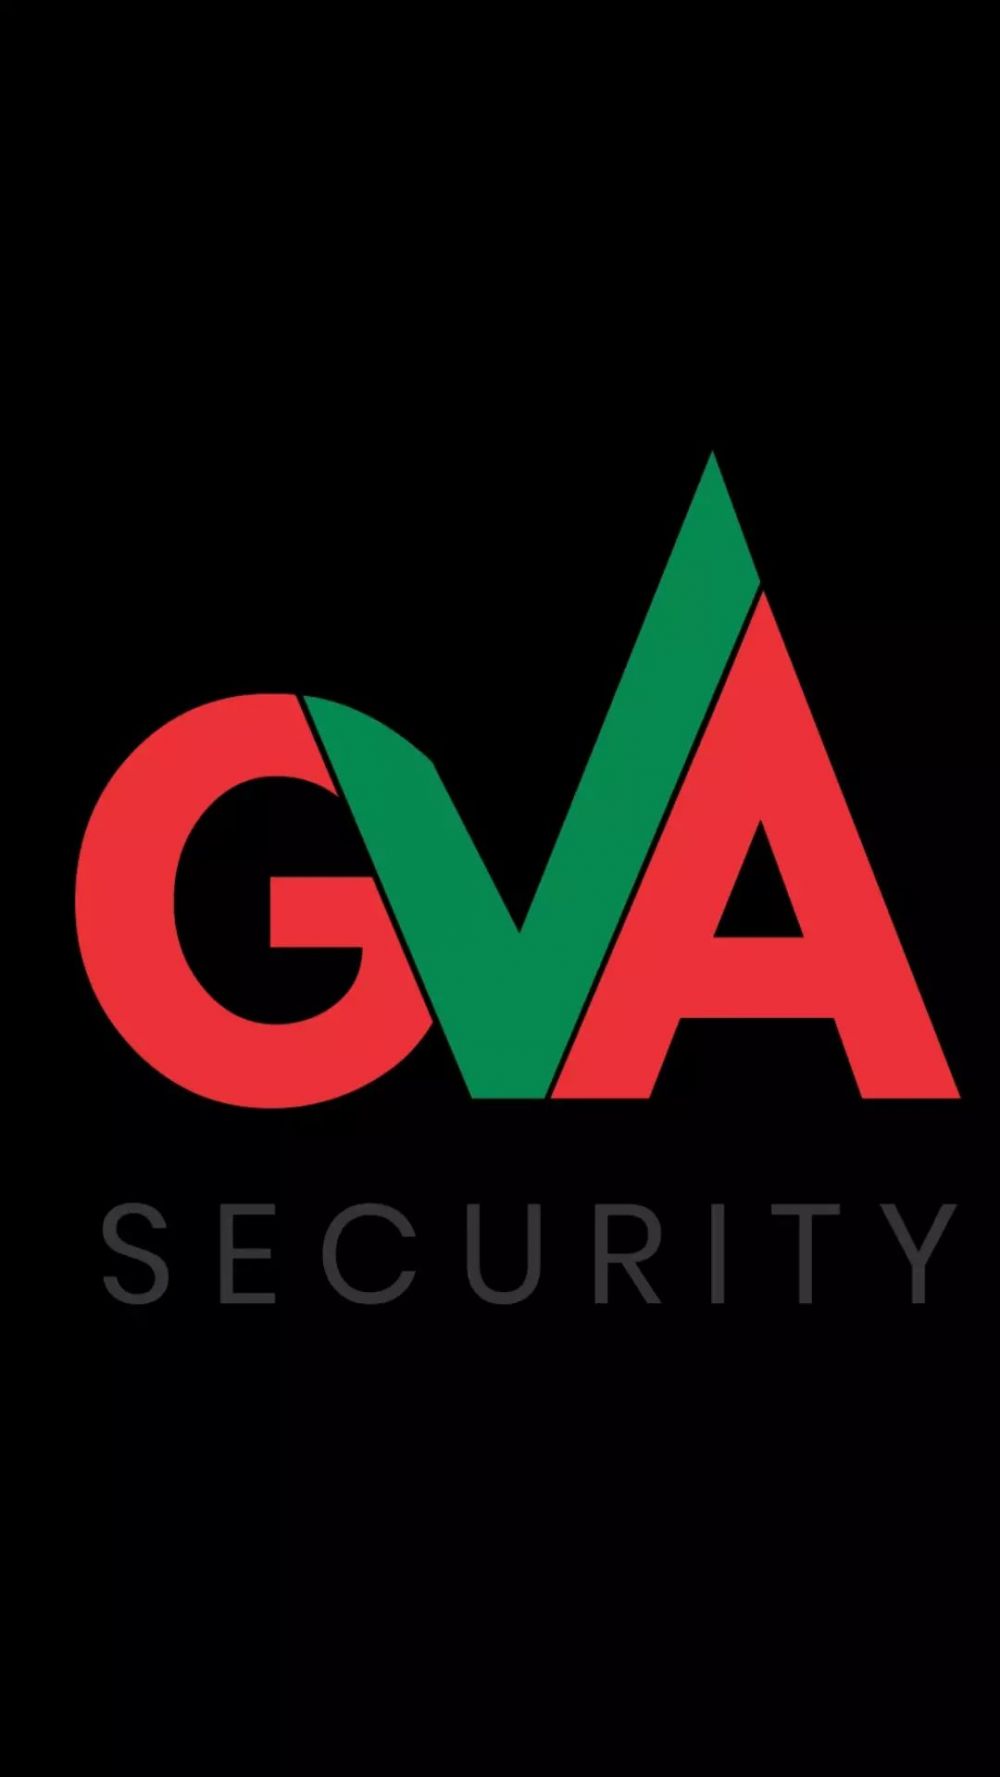 Gva fire security